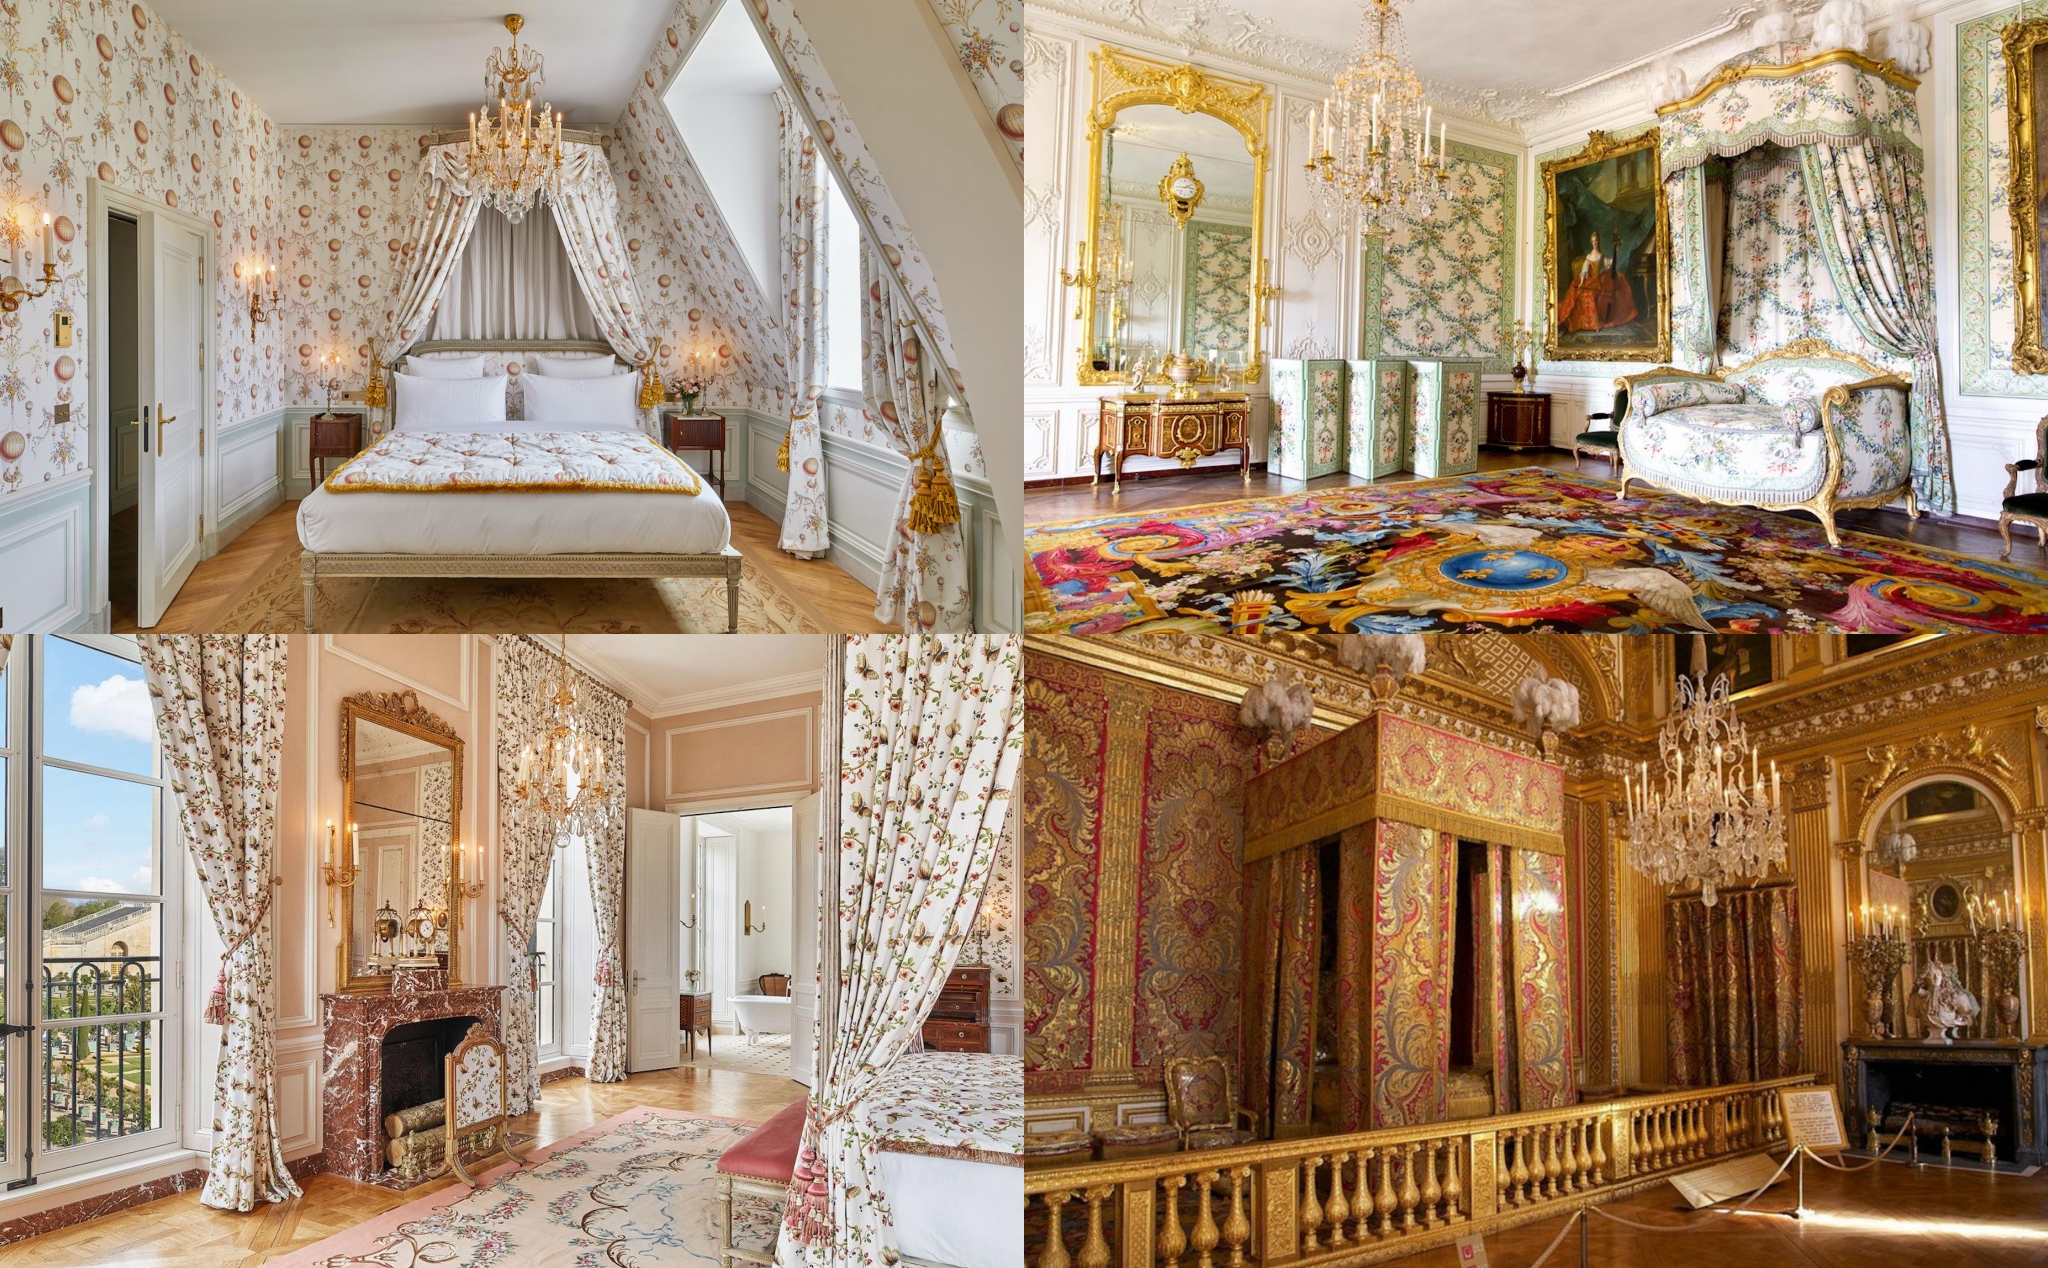 Cung điện Versailles khai trương khách sạn đầu tiên với giá từ 46 triệu/đêm